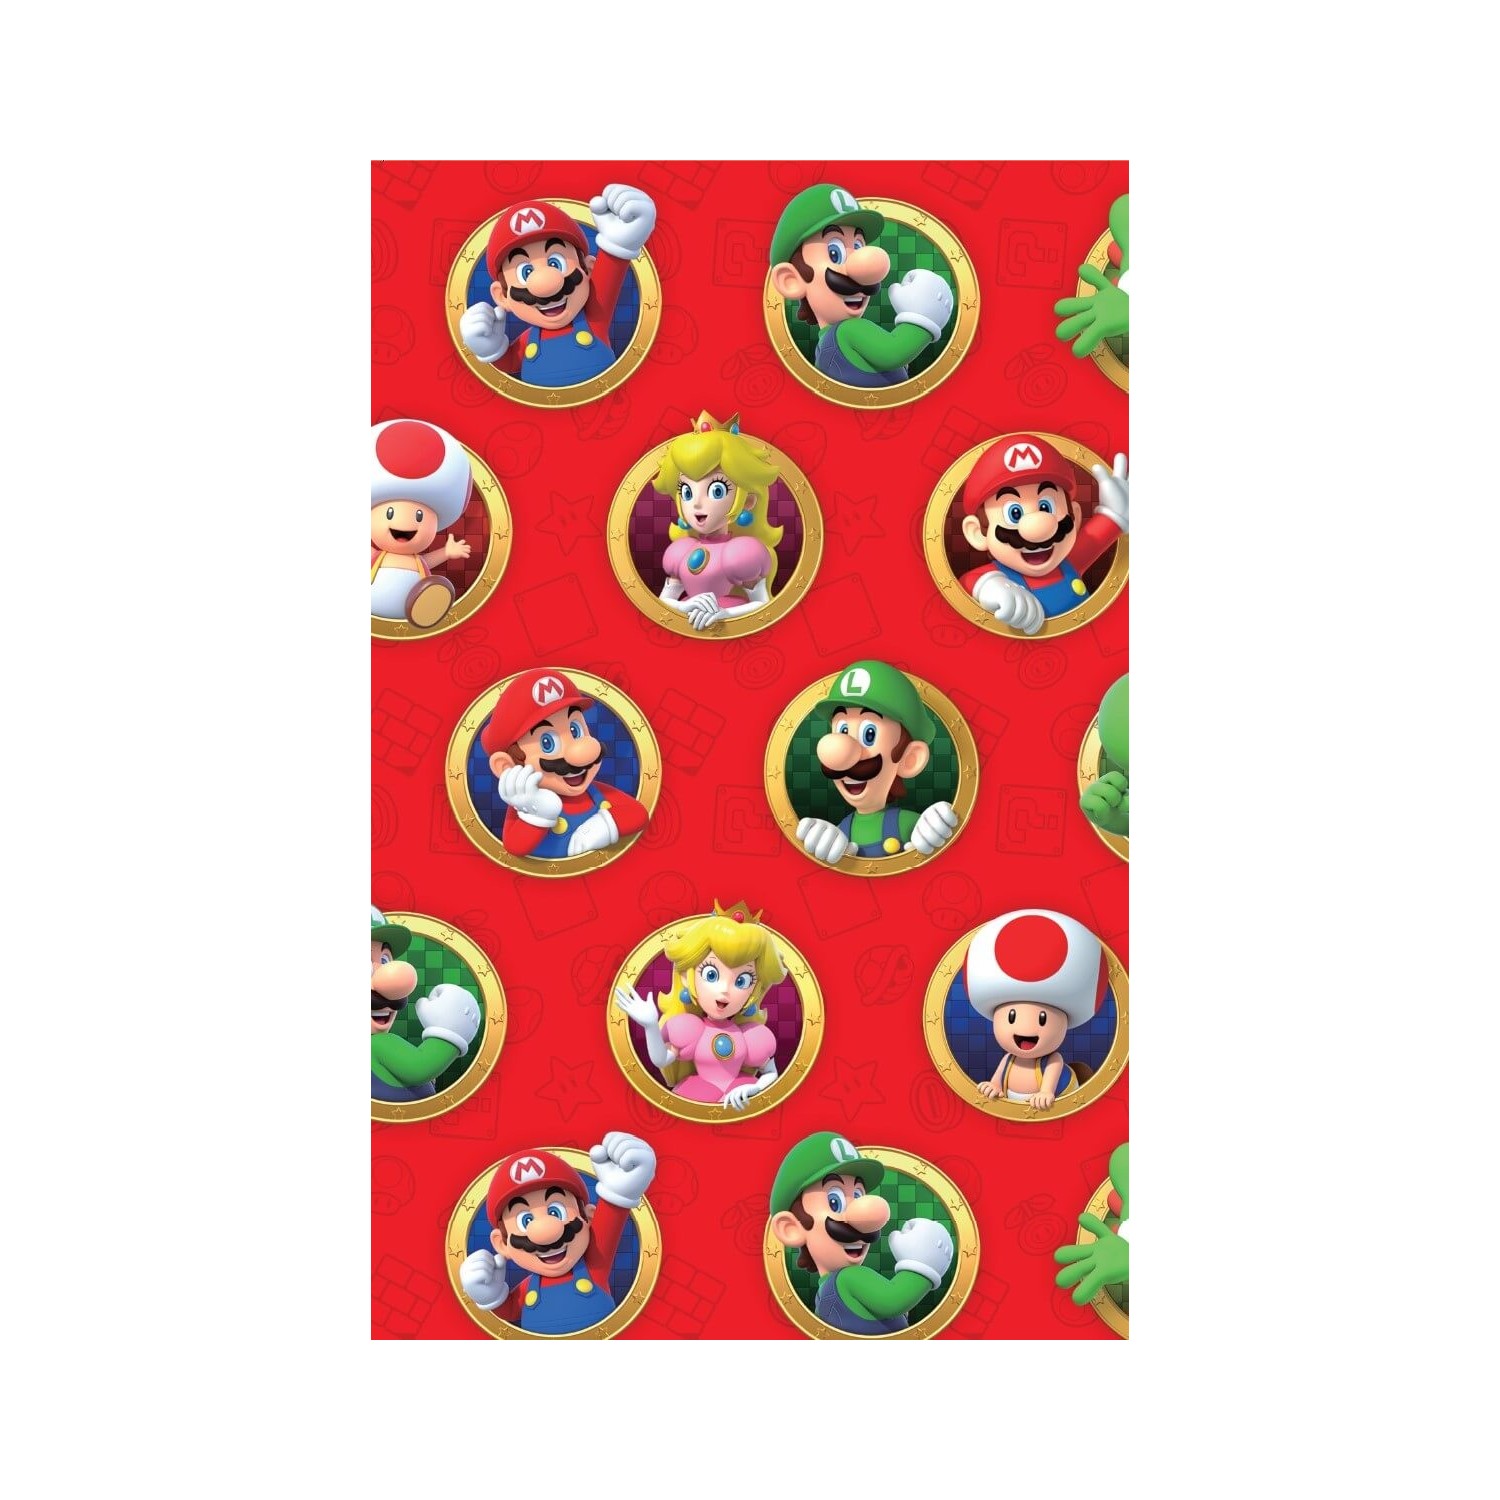 Gorra Super Mario Bros - Tienda de regalos originales de Mario